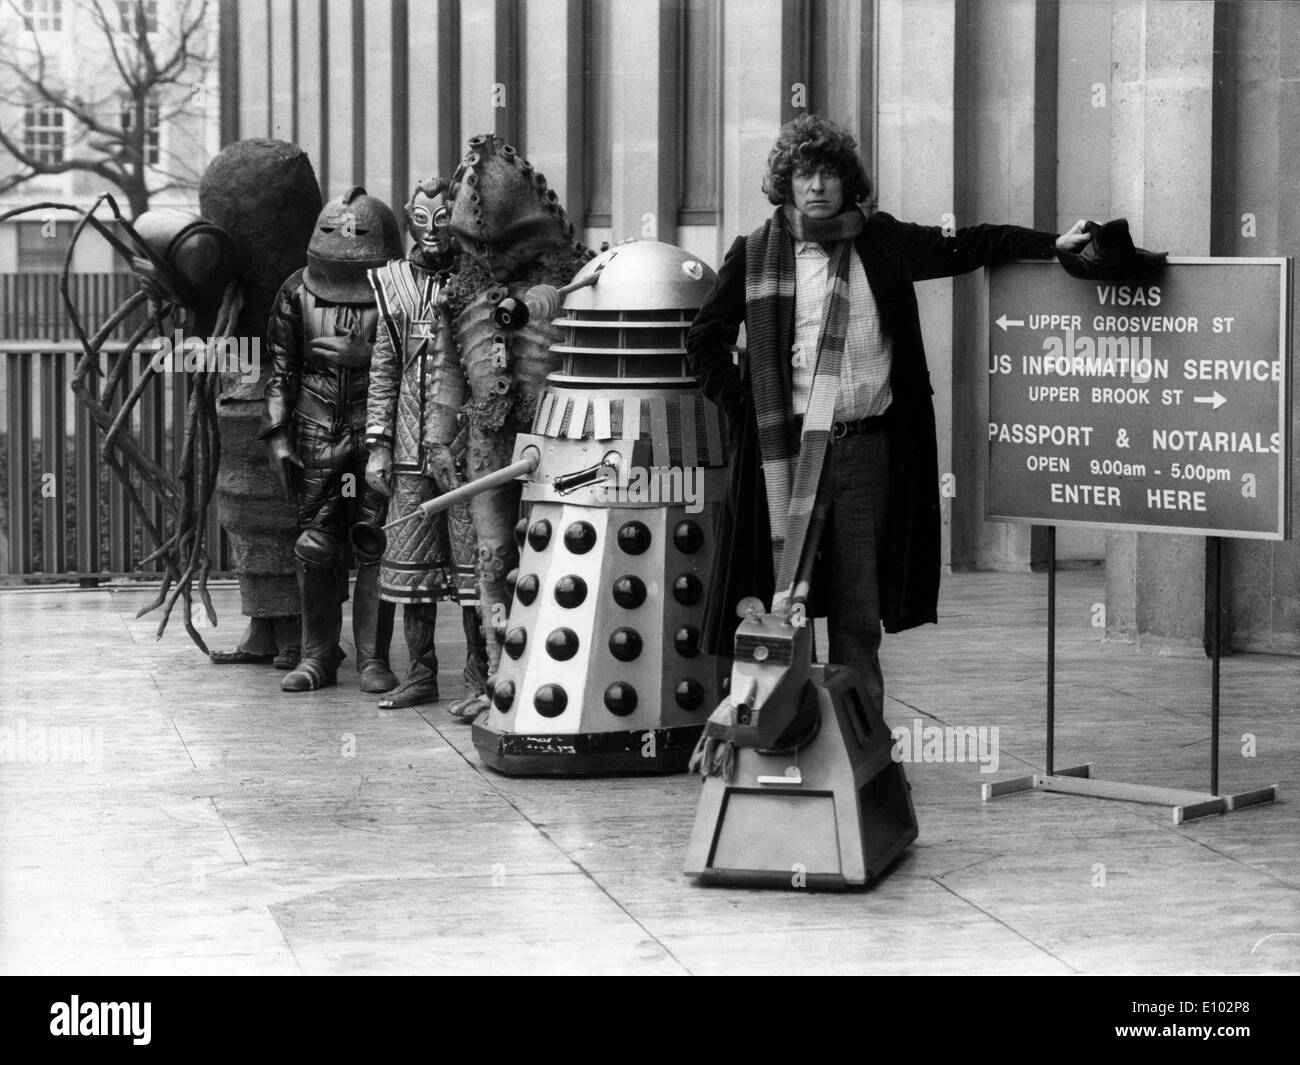 Dr Who älteste Bösewicht, wartet ein DALEK in der Linie für einen US-Pass mit dem 4. Mal Herrn Doktor TOM BAKER und Roboter-Hund k-9. Stockfoto